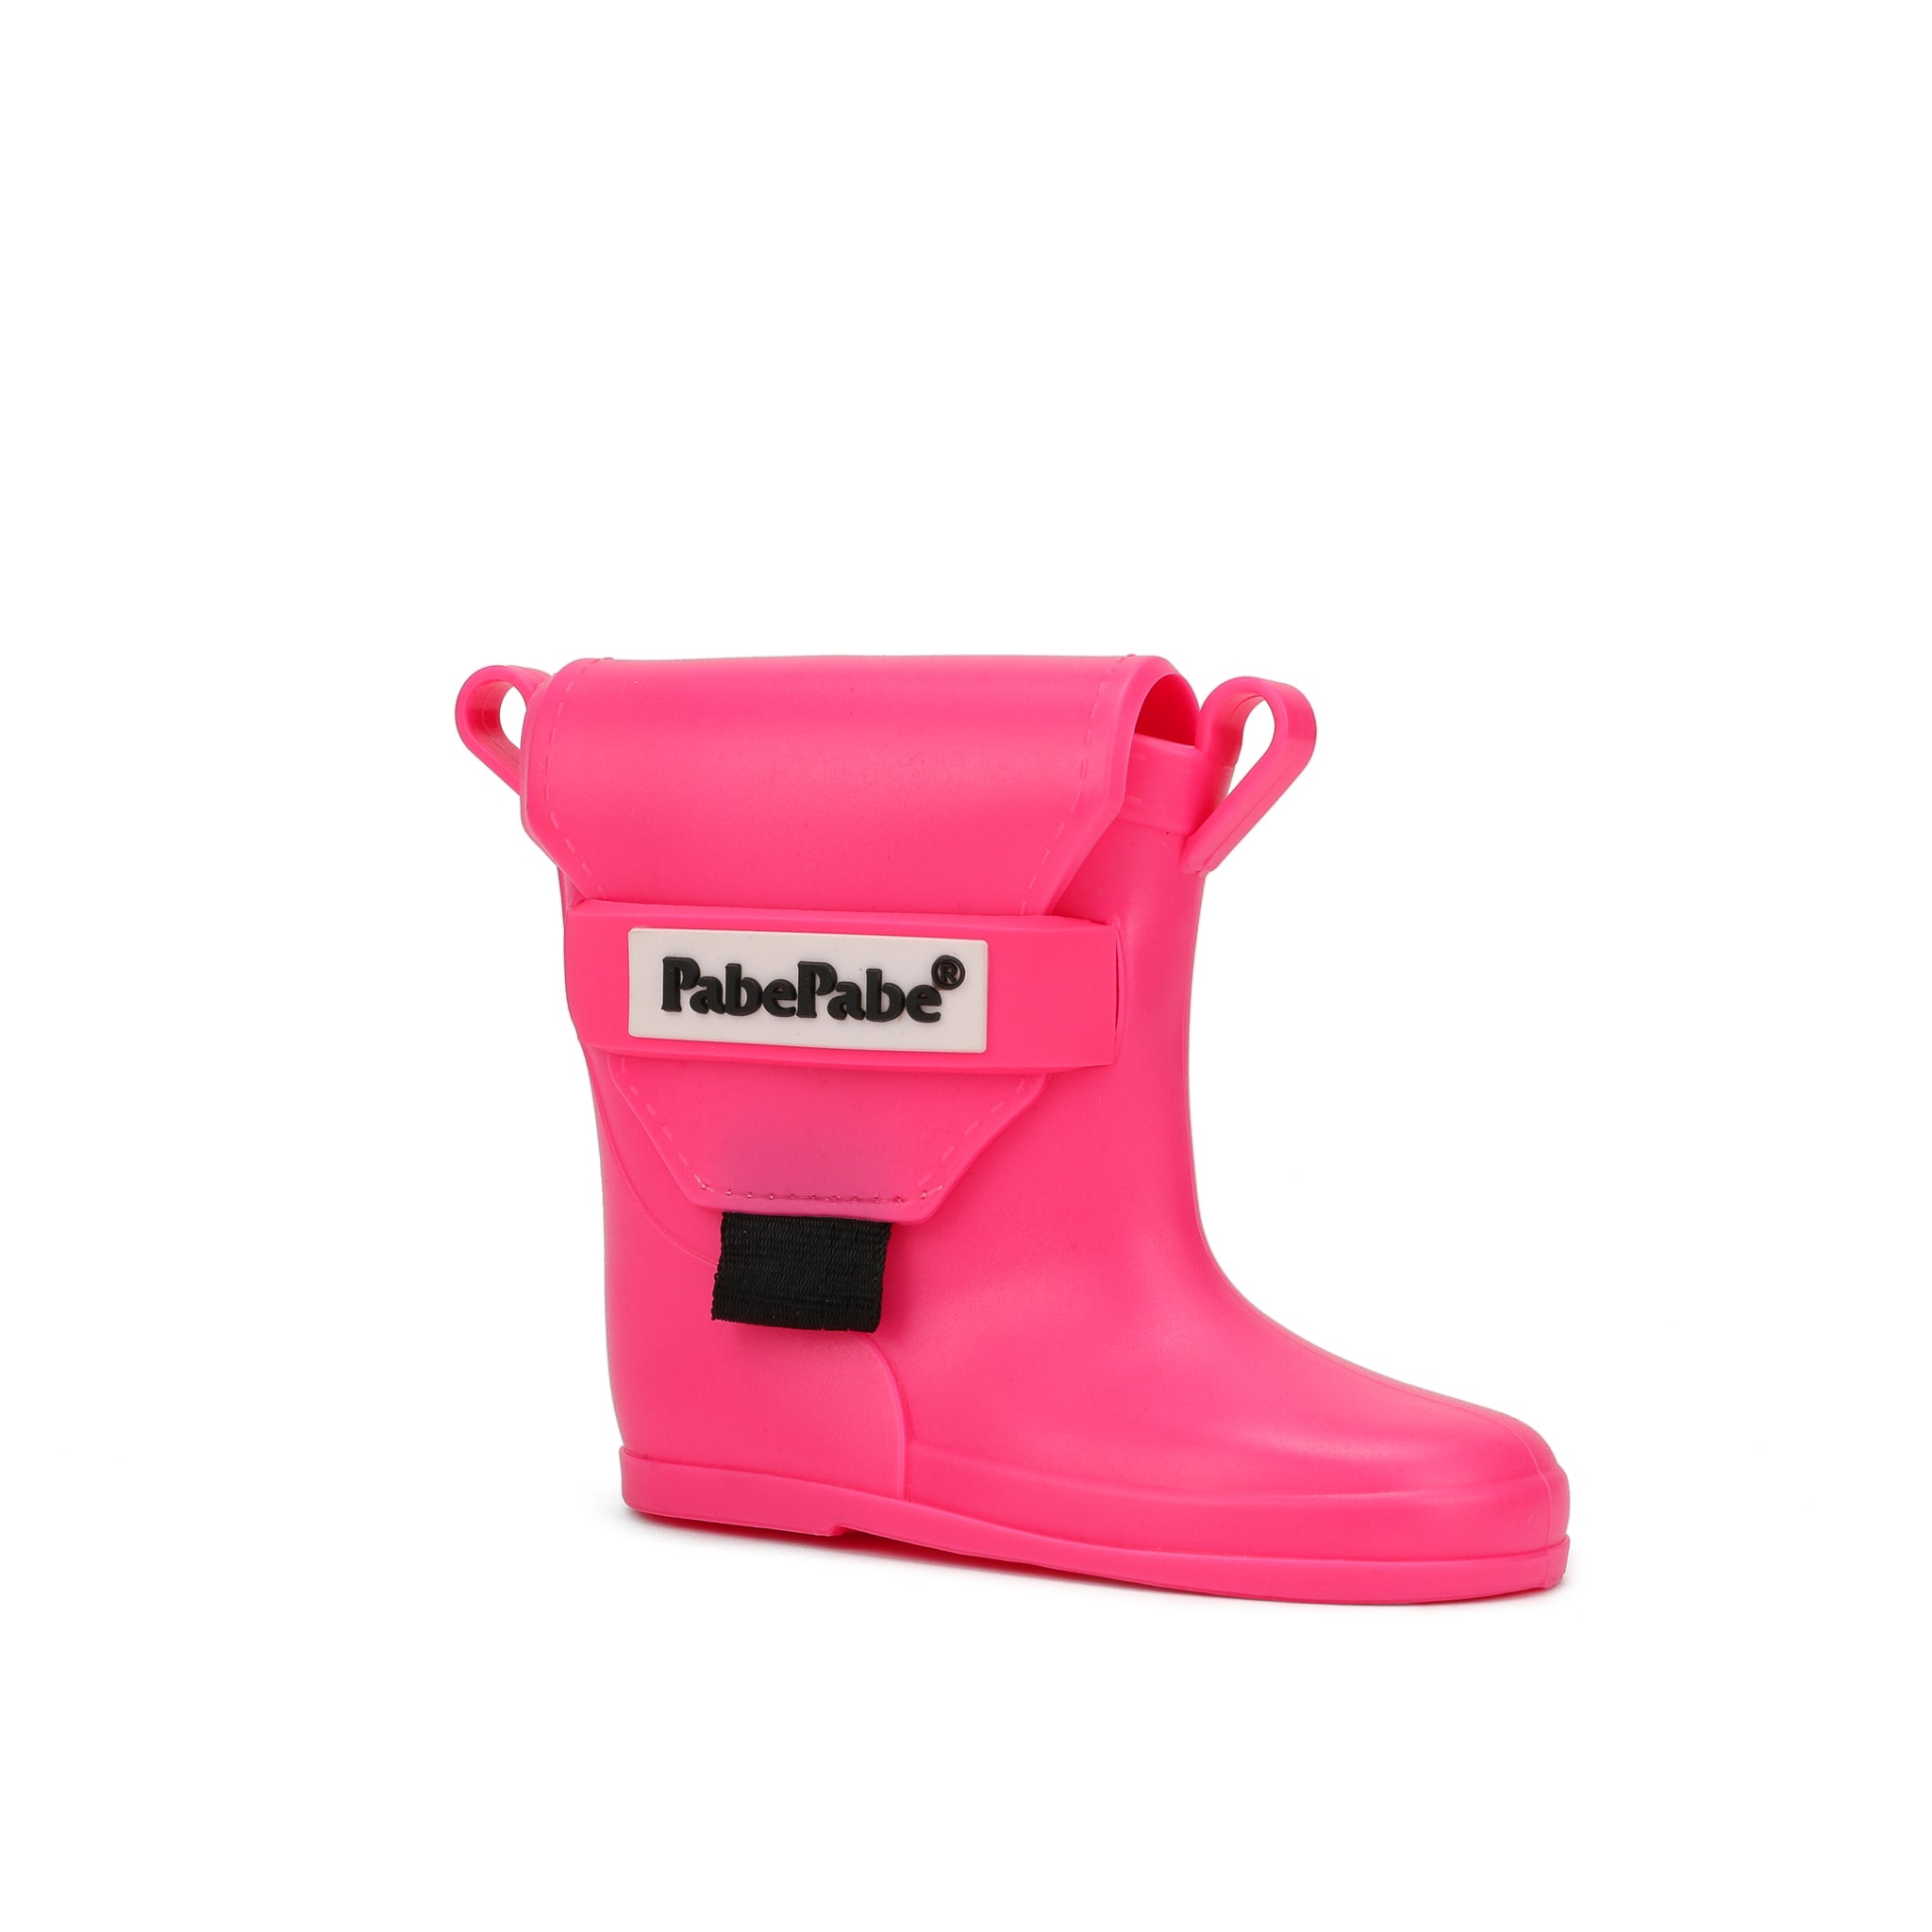 Rainboot EarPod mini bag ( exclusive pink )